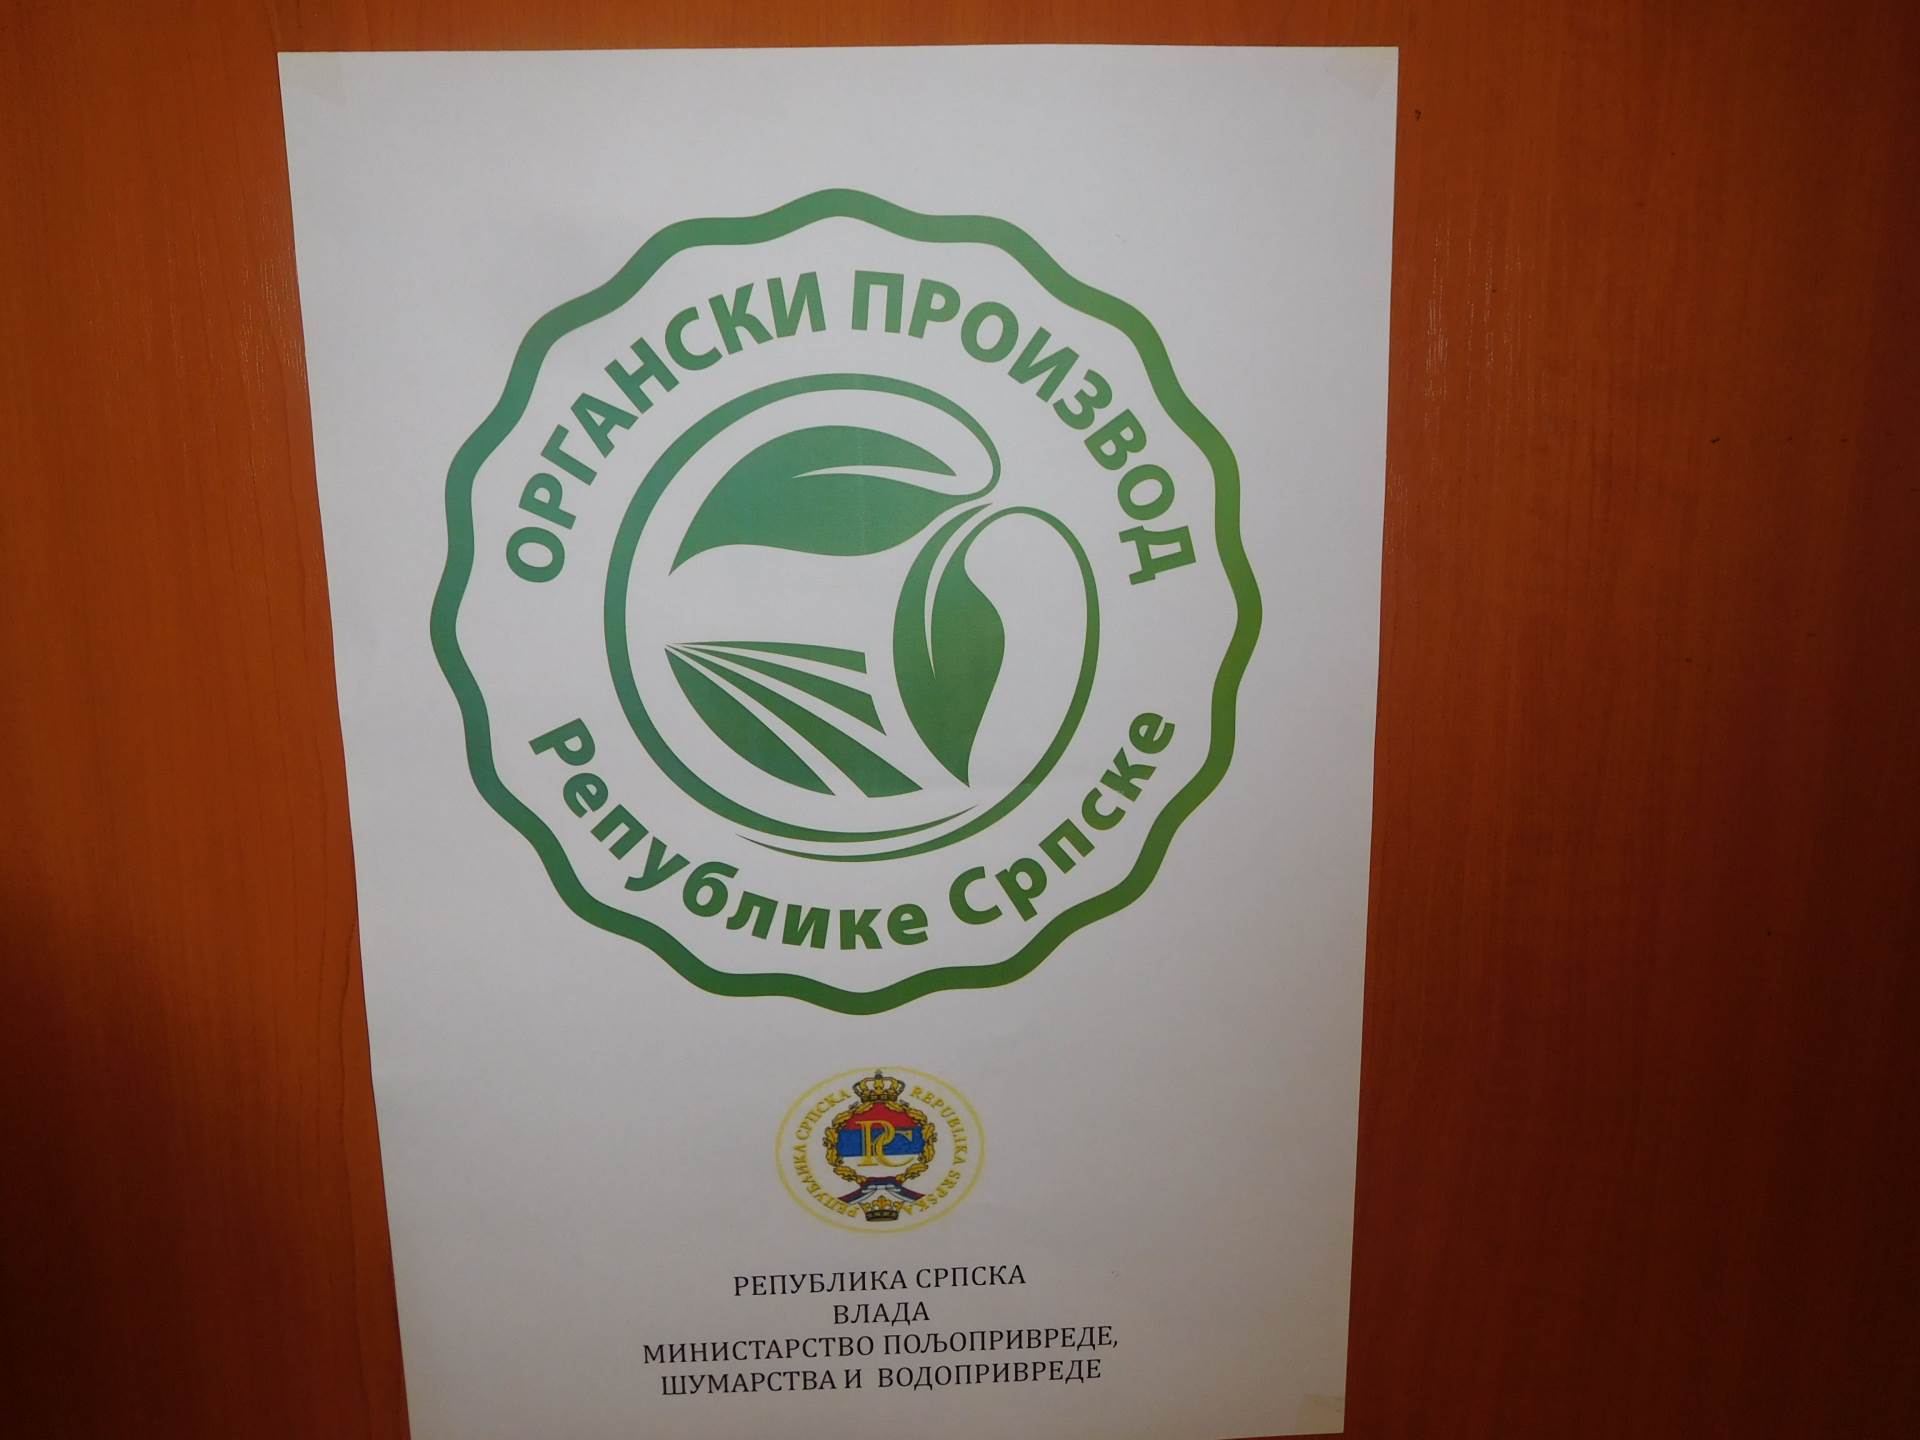  Srpska dobila znak za organske proizvode 